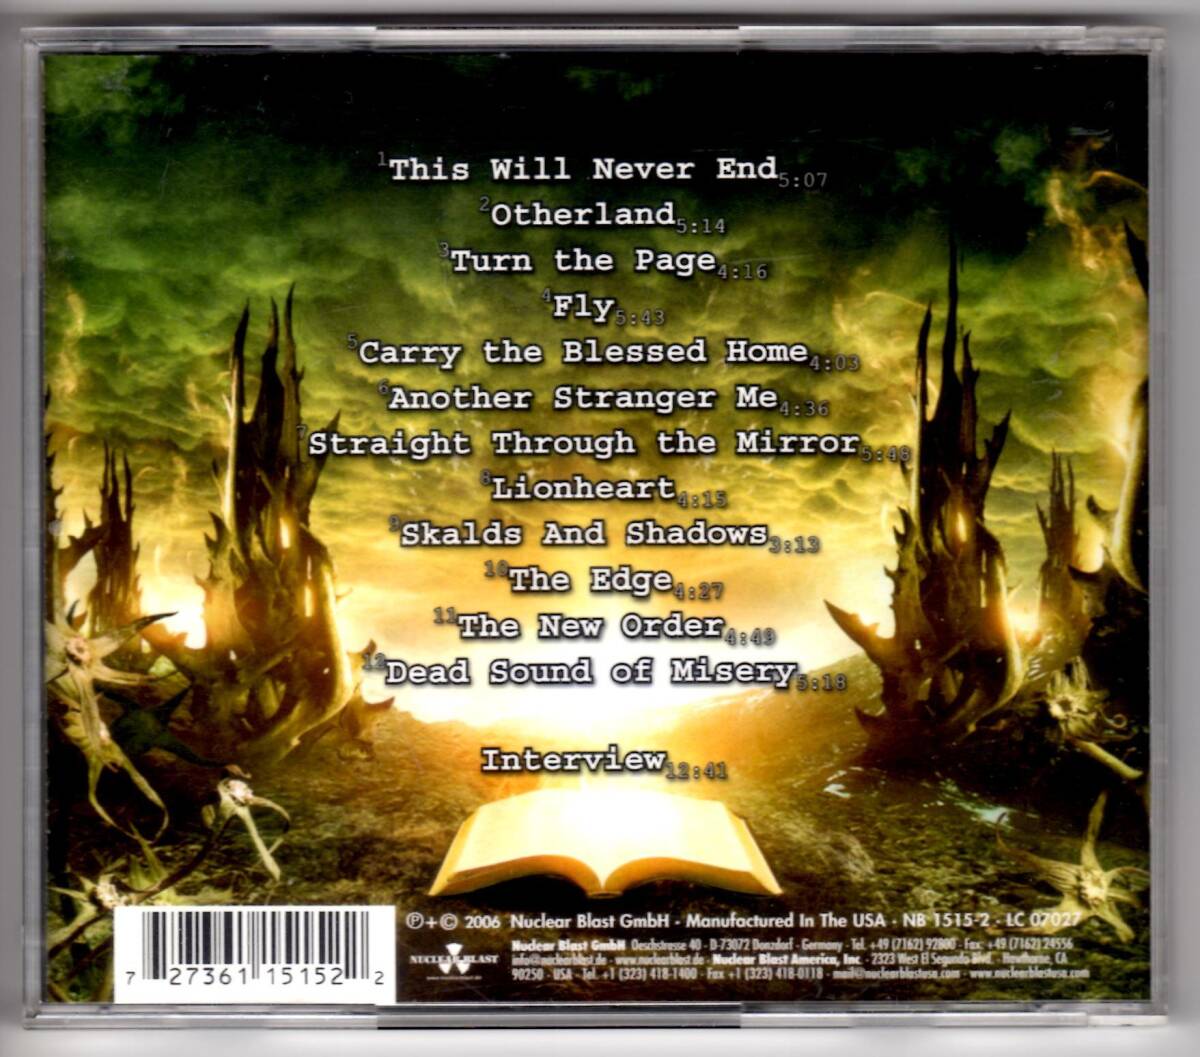 Used CD 輸入盤 ブラインド・ガーディアン BLIND GUARDIAN『ア・トゥイスト・イン・ザ・ミス』- A Twist in the Myth(2006年) 全12曲US盤